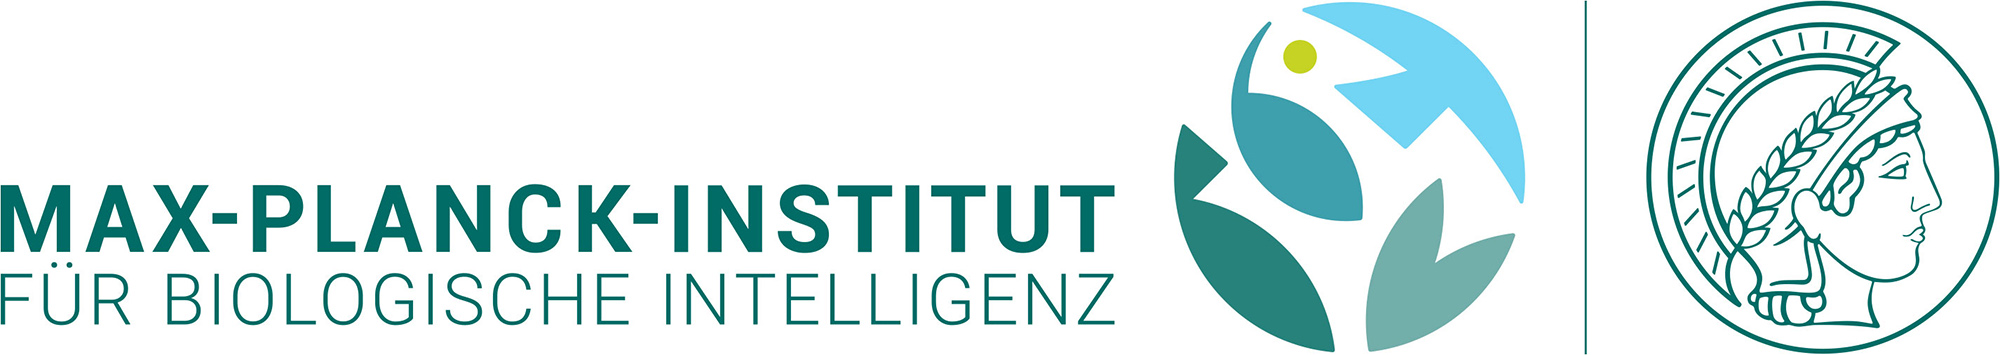 Logo: Max-Planck-Institut für biologische Intelligenz